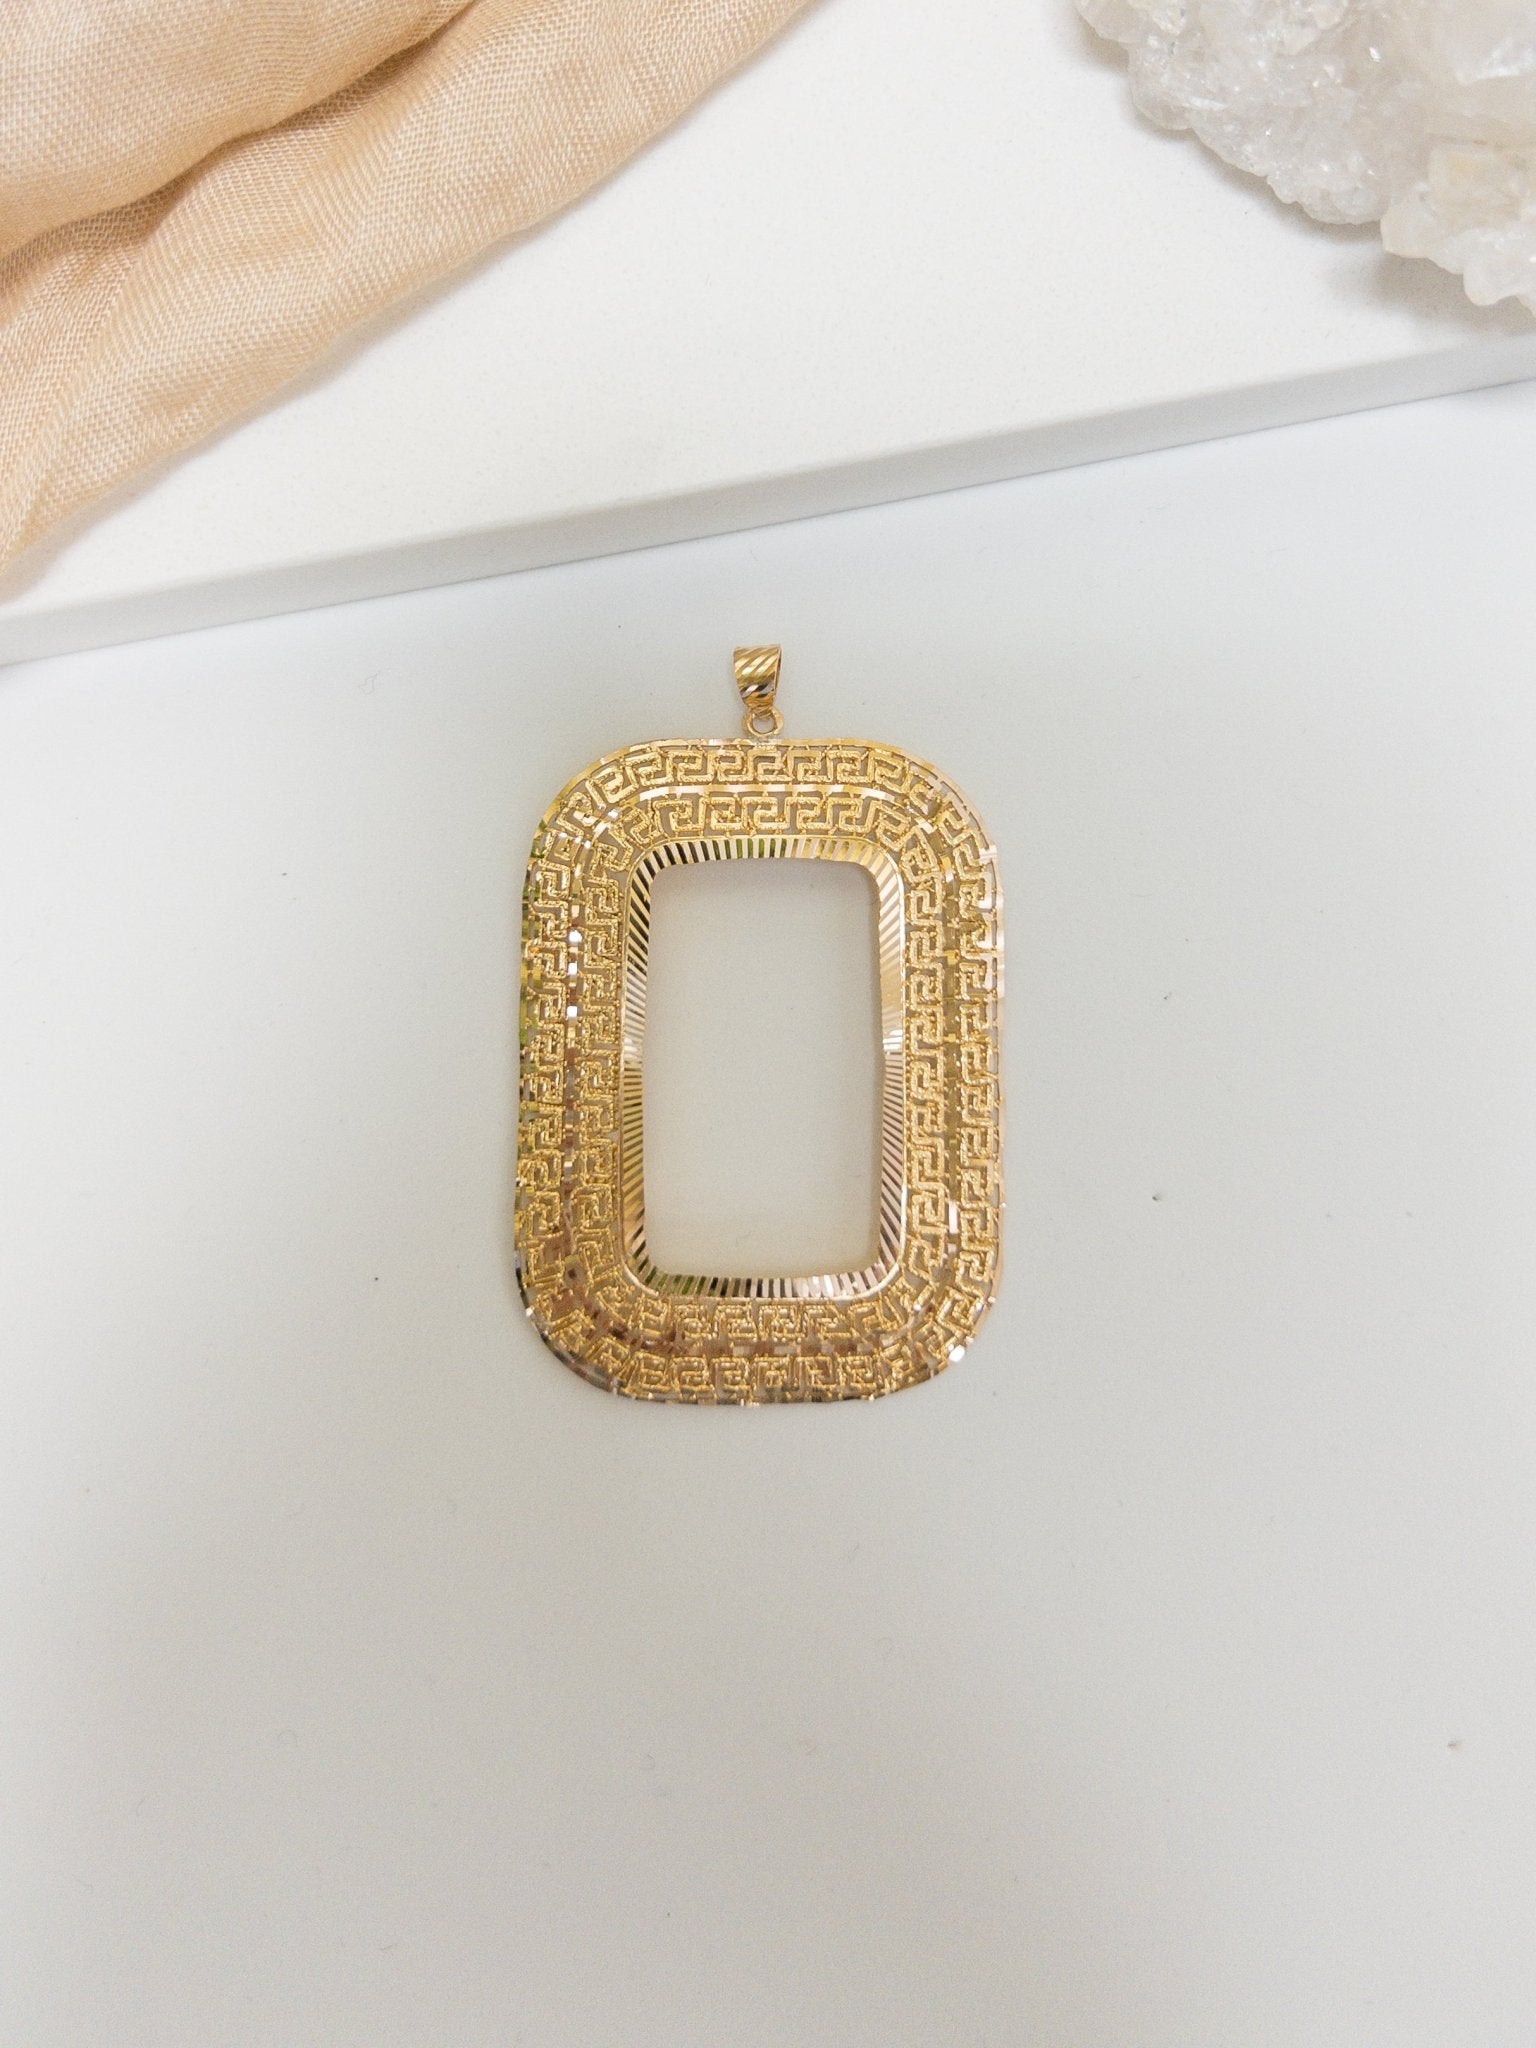 21k Ounce Frame Pendants - Cleopatra Jewelers